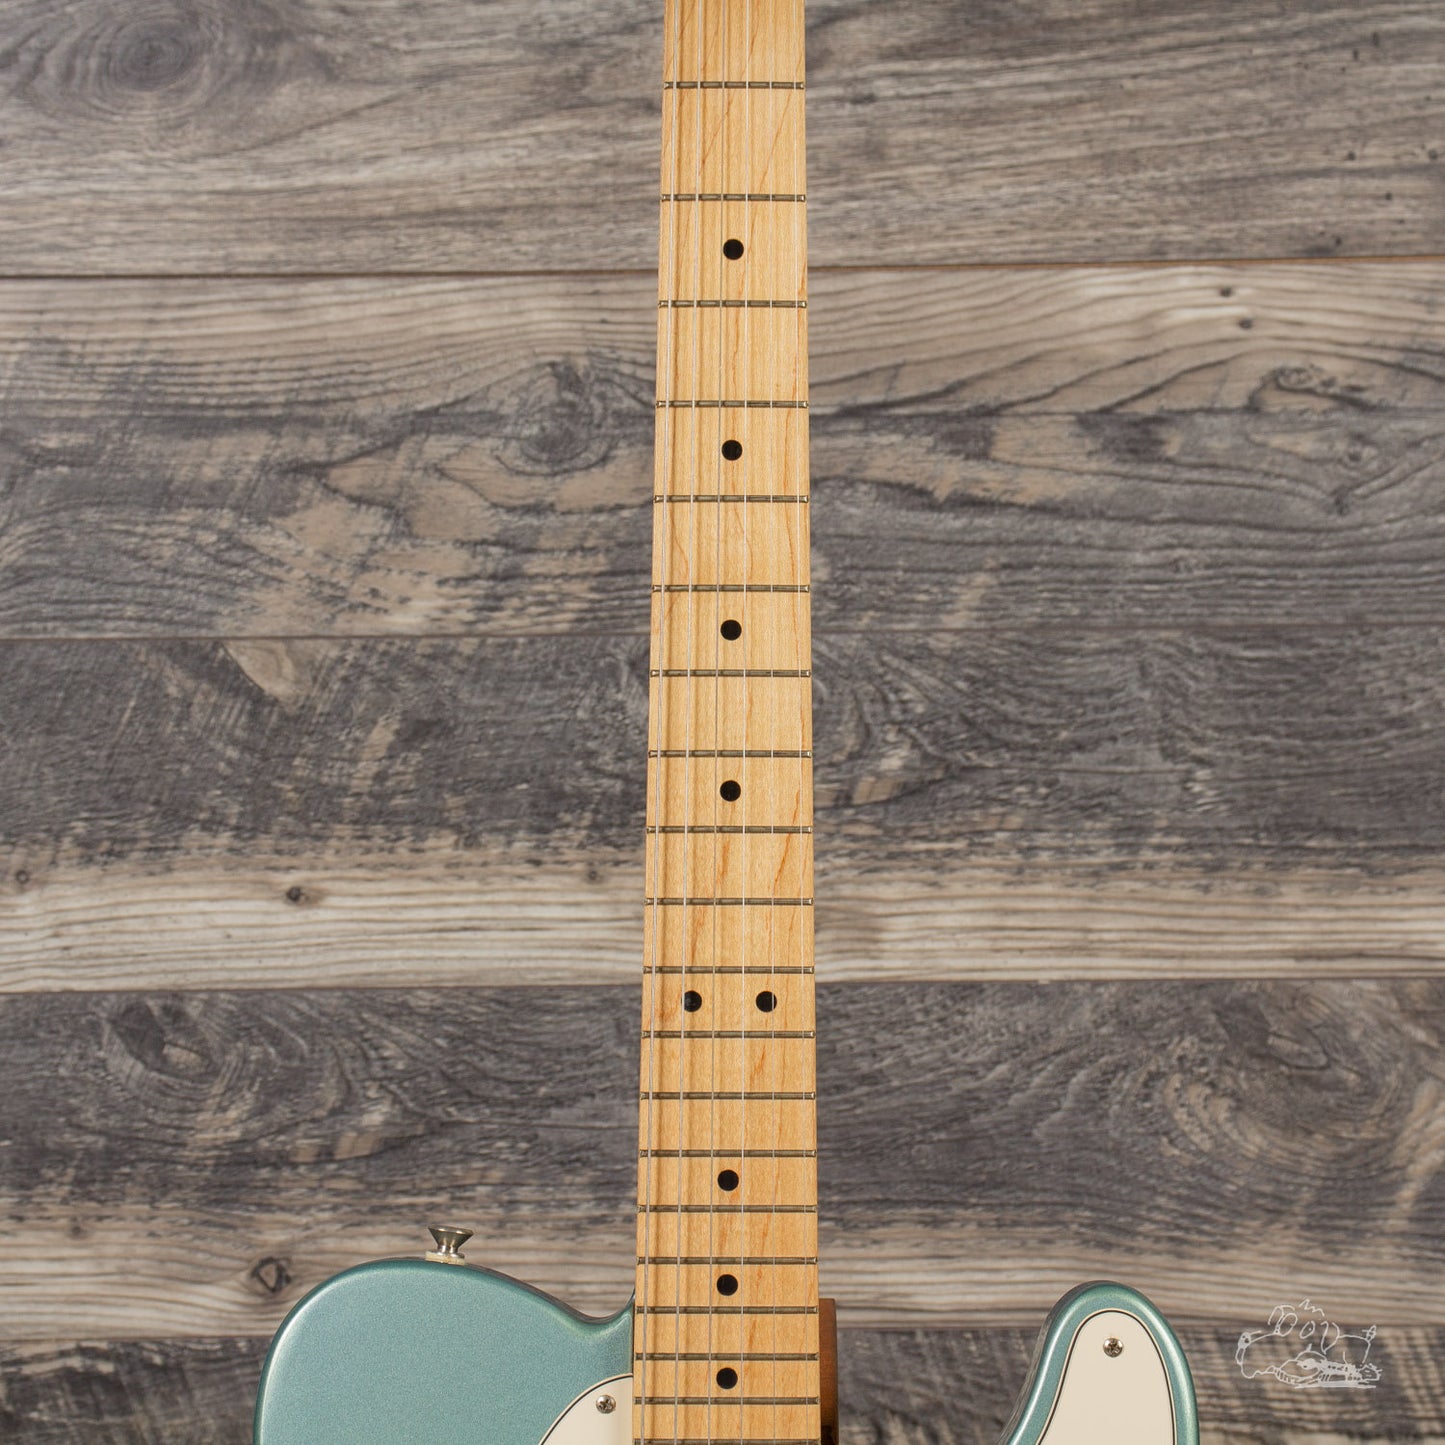 2004 Fender Telecaster - Metallic Blue